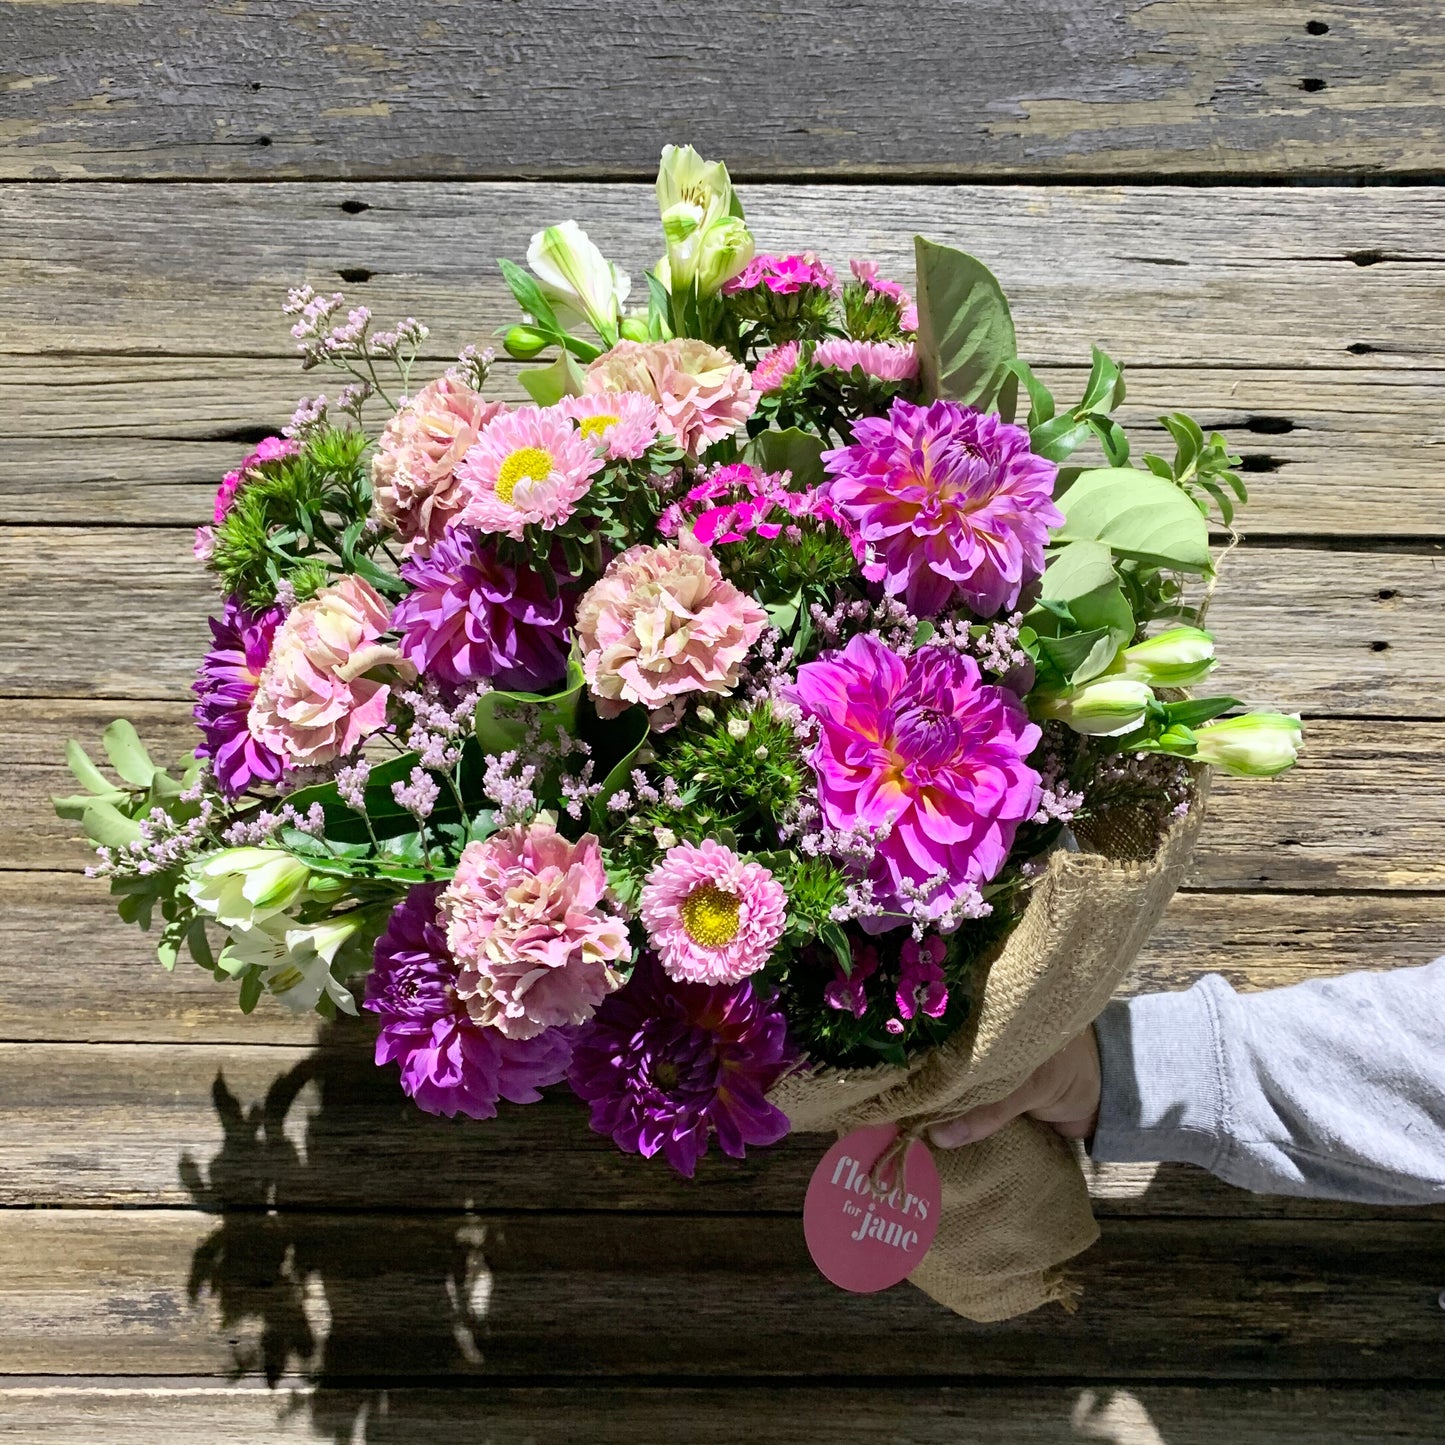 Flowers for Jane’s Cheltenham floral studio now open for pick ups